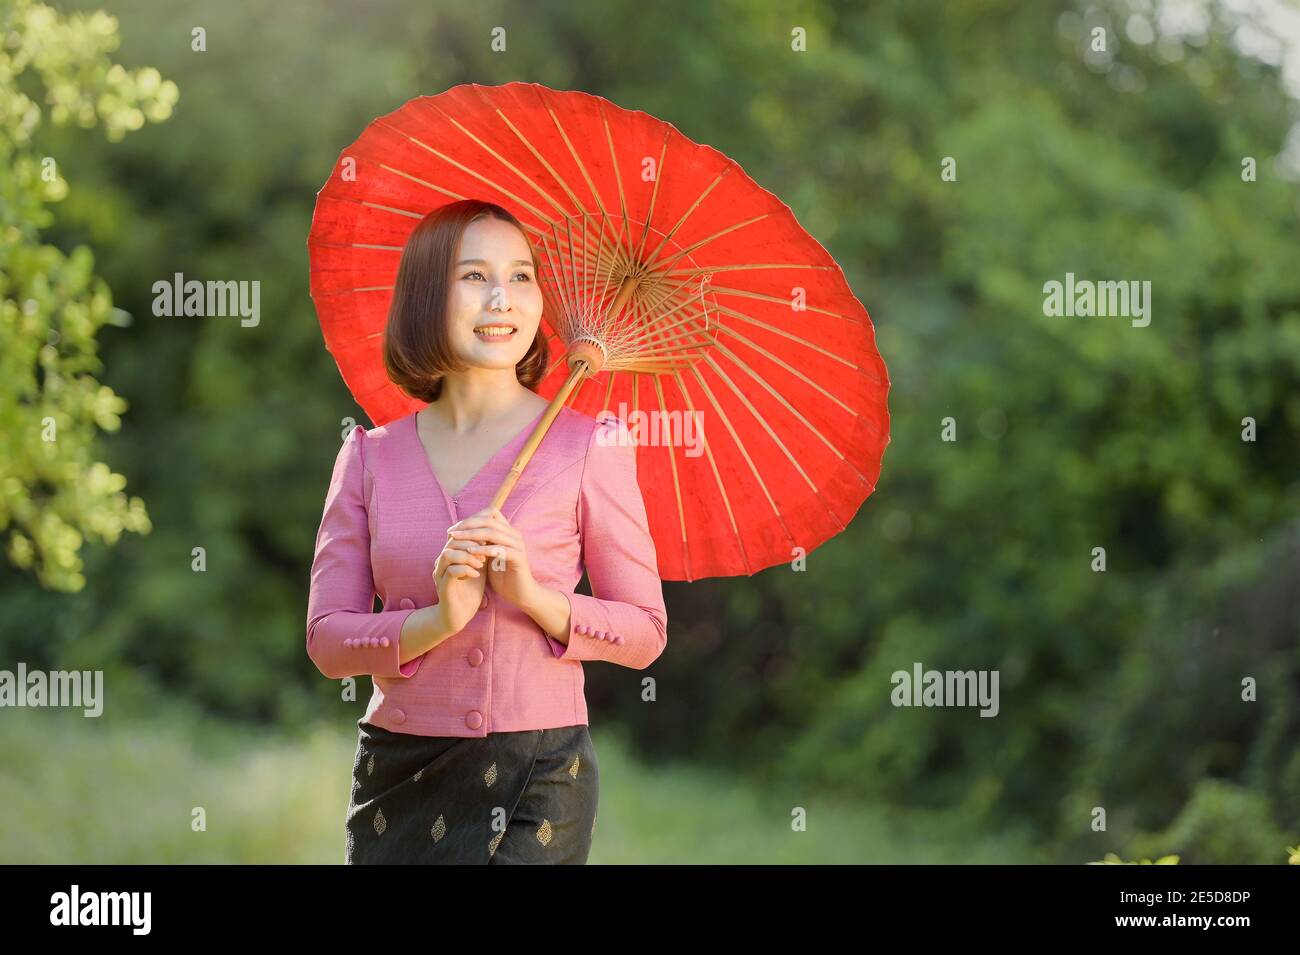 Portrait d'une femme souriante debout dans un jardin tenant un parasol, Thaïlande Banque D'Images